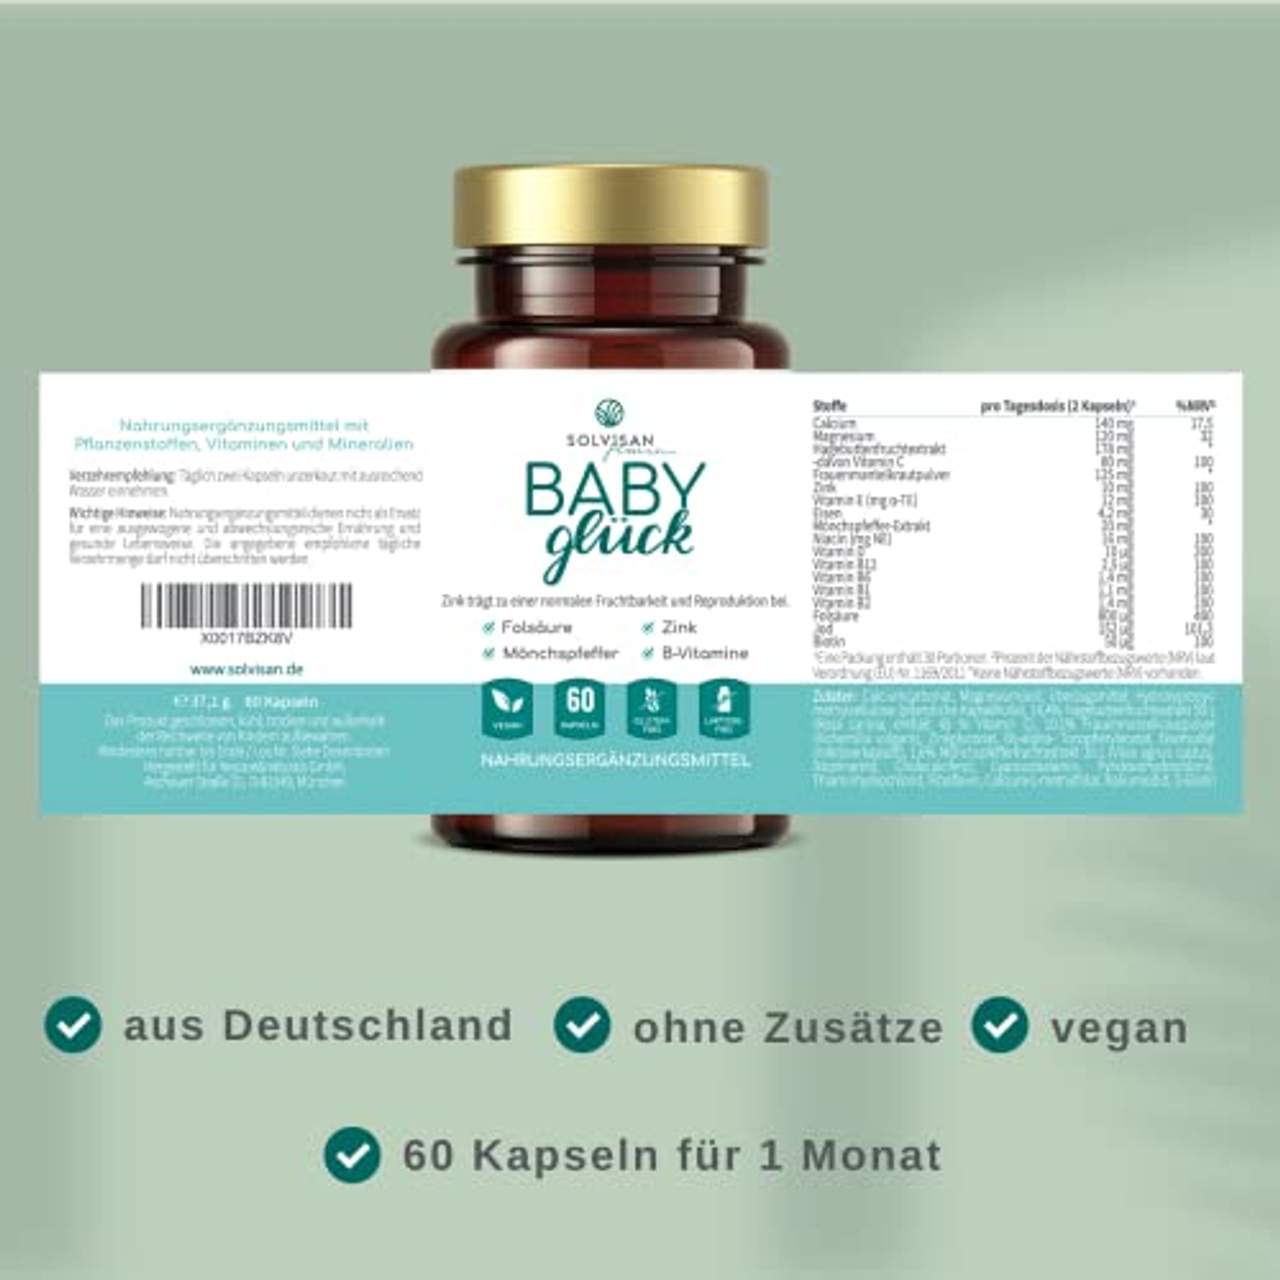 SOLVISAN Baby Glück mit Mönchspfeffer Extrakt und Folsäure